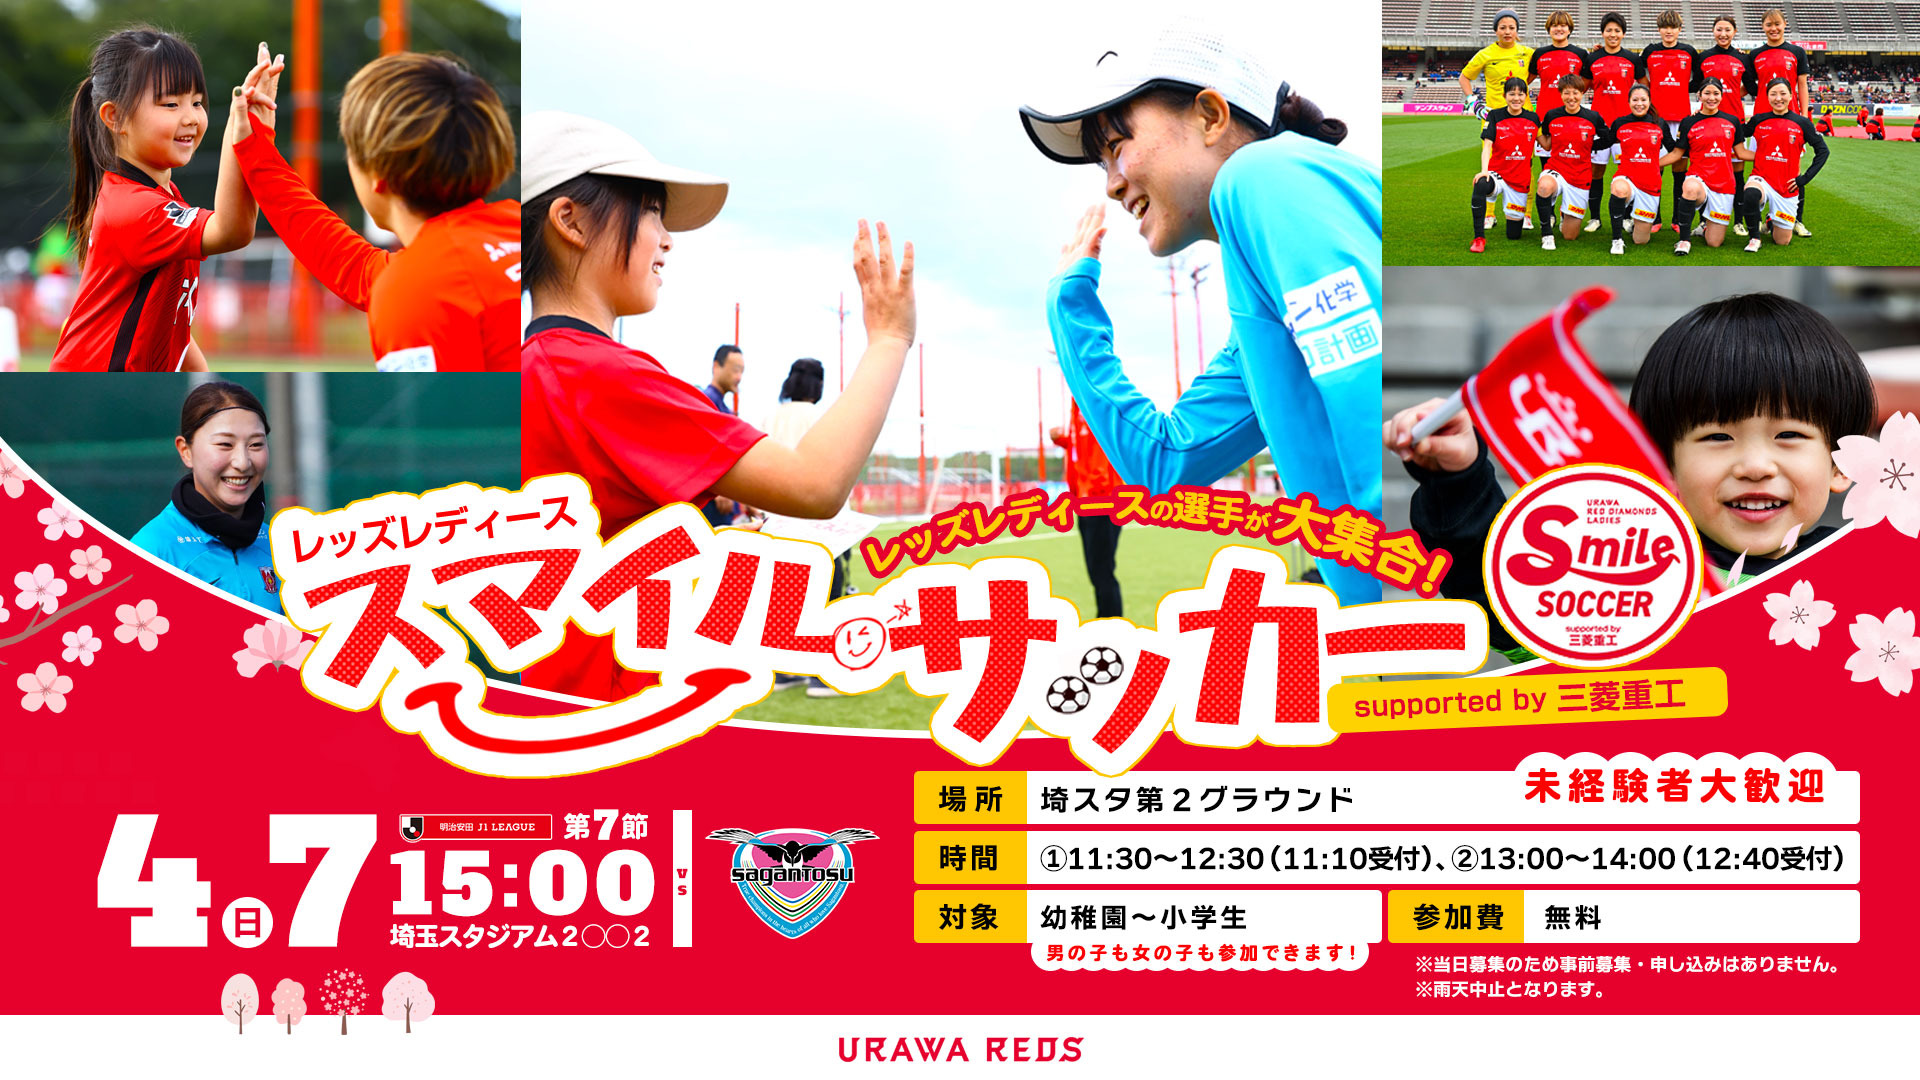 ประกาศ &quot;Reds Ladies Smile Soccer สนับสนุนโดย Mitsubishi Heavy Industries&quot; (อัปเดตเมื่อ 6/4)